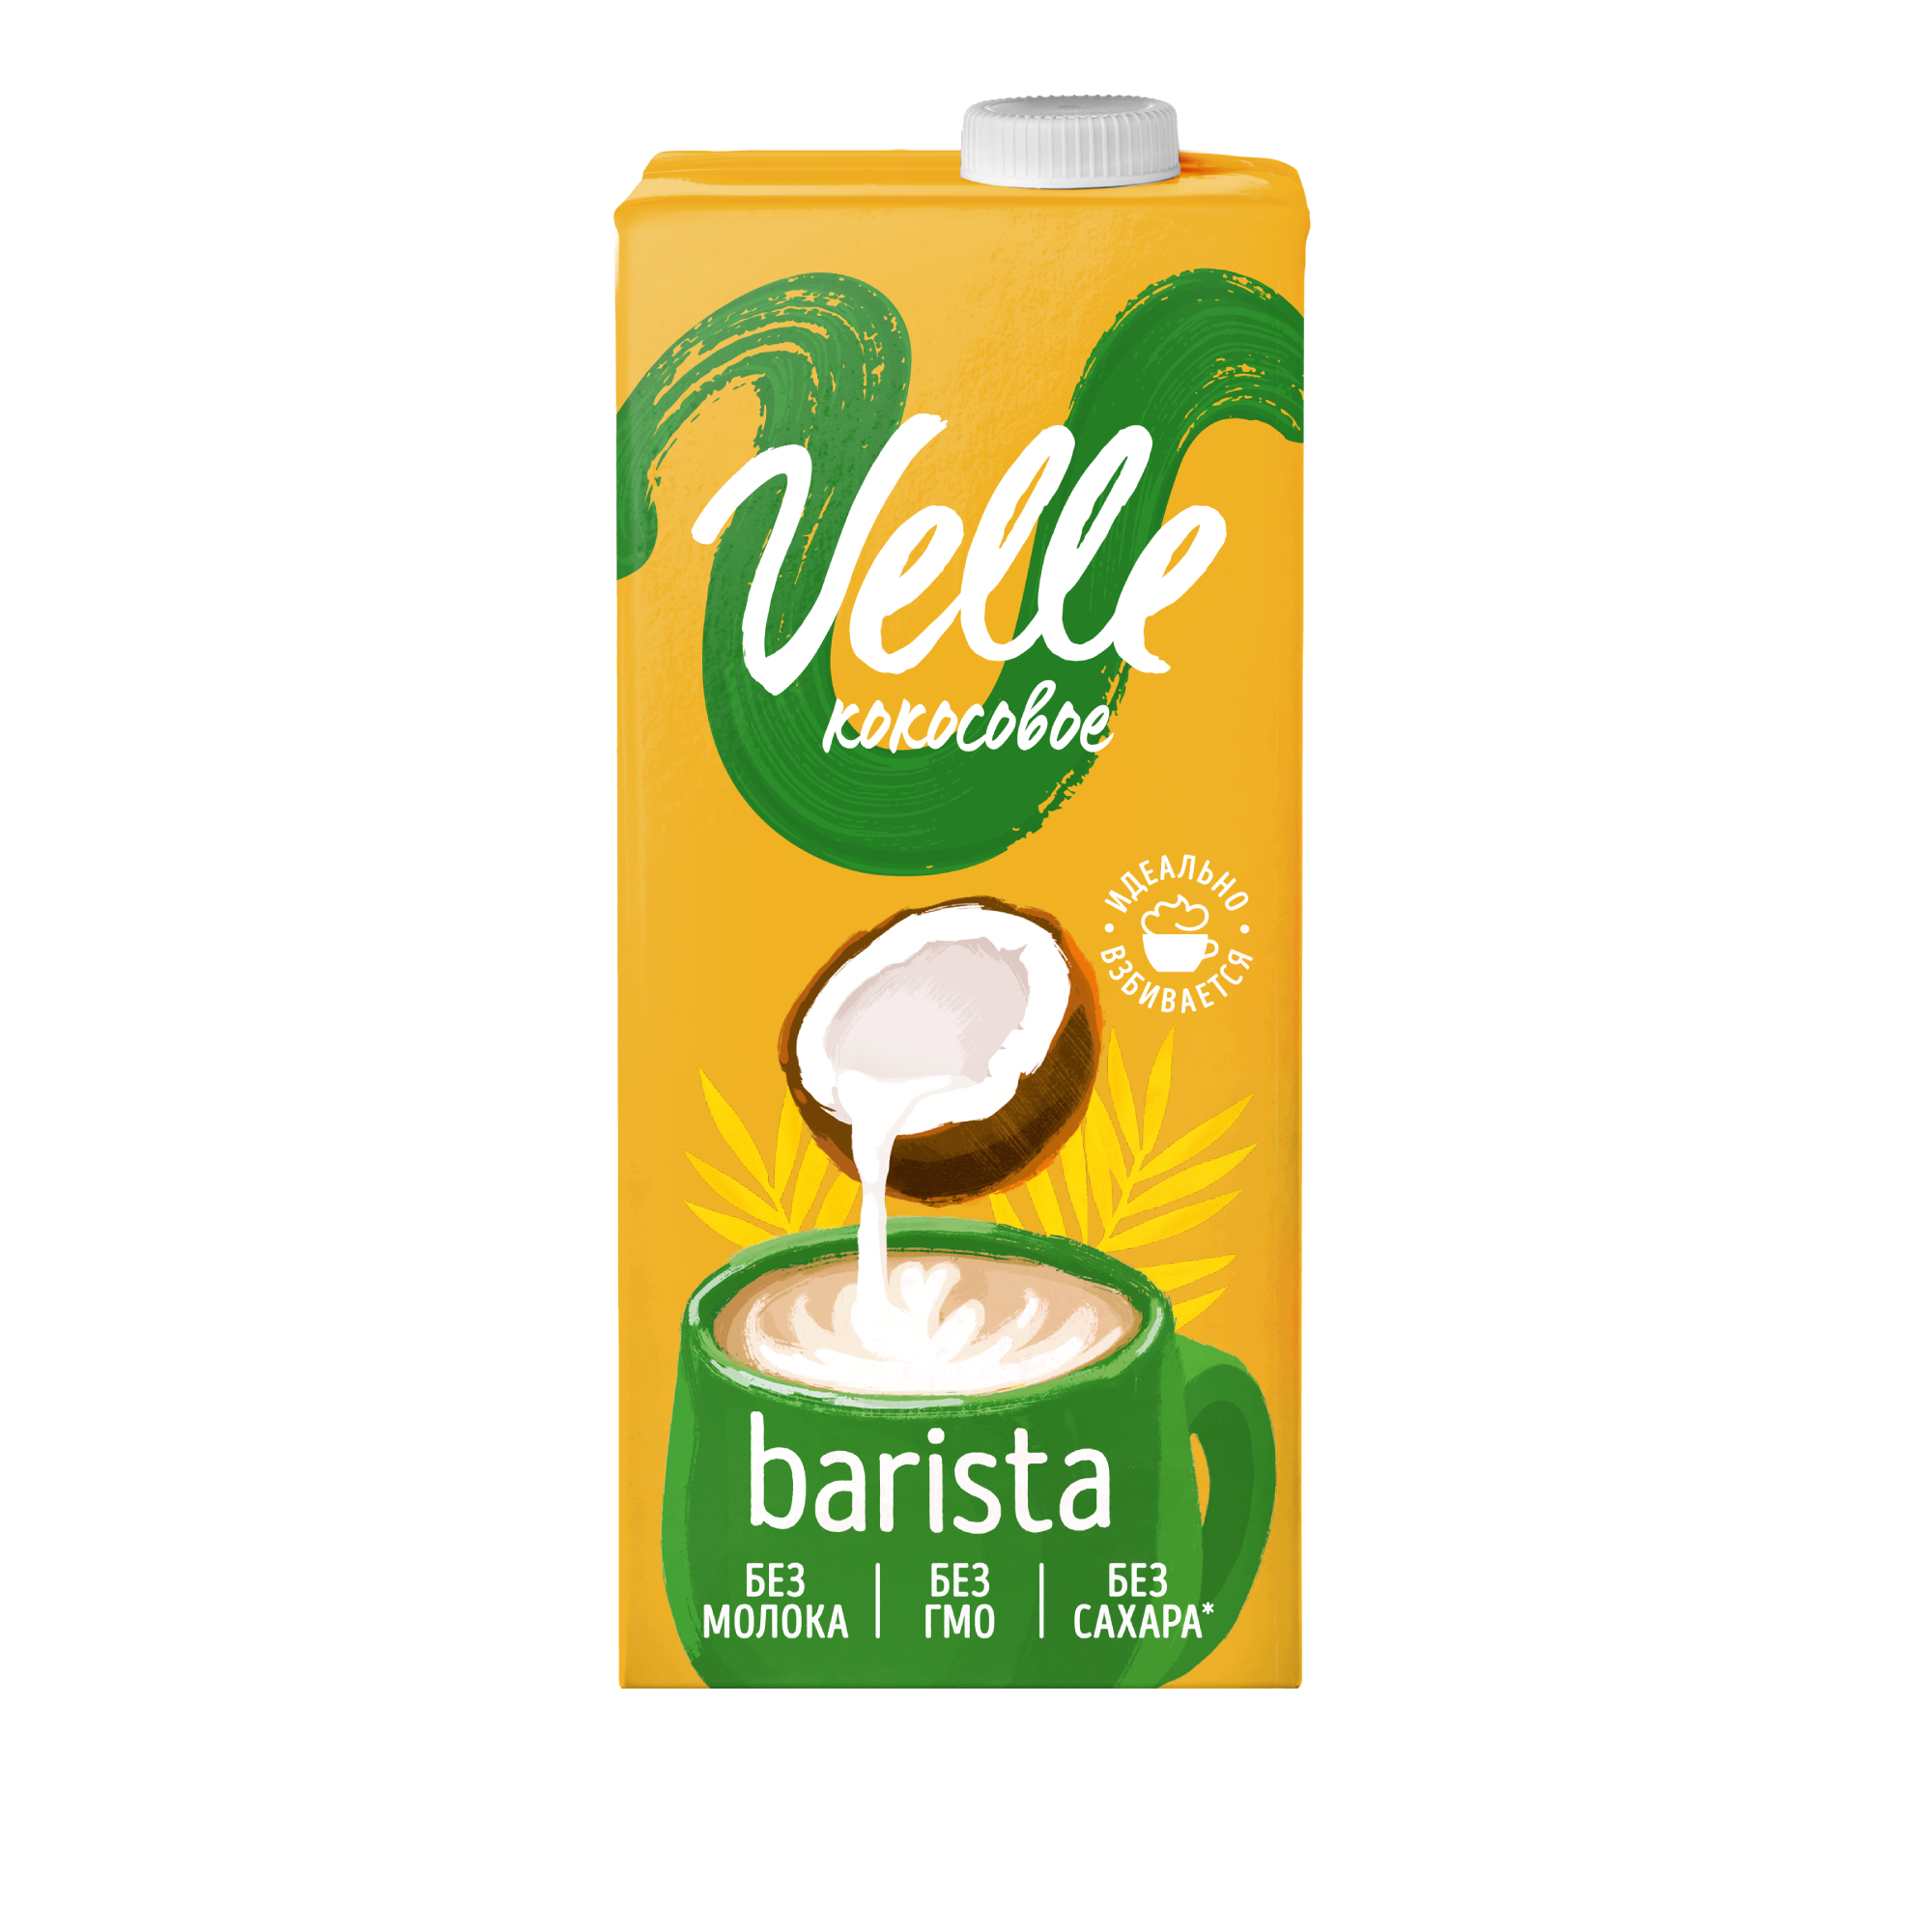 Напиток растительный Velle кокосовый 1.5%, 1 л